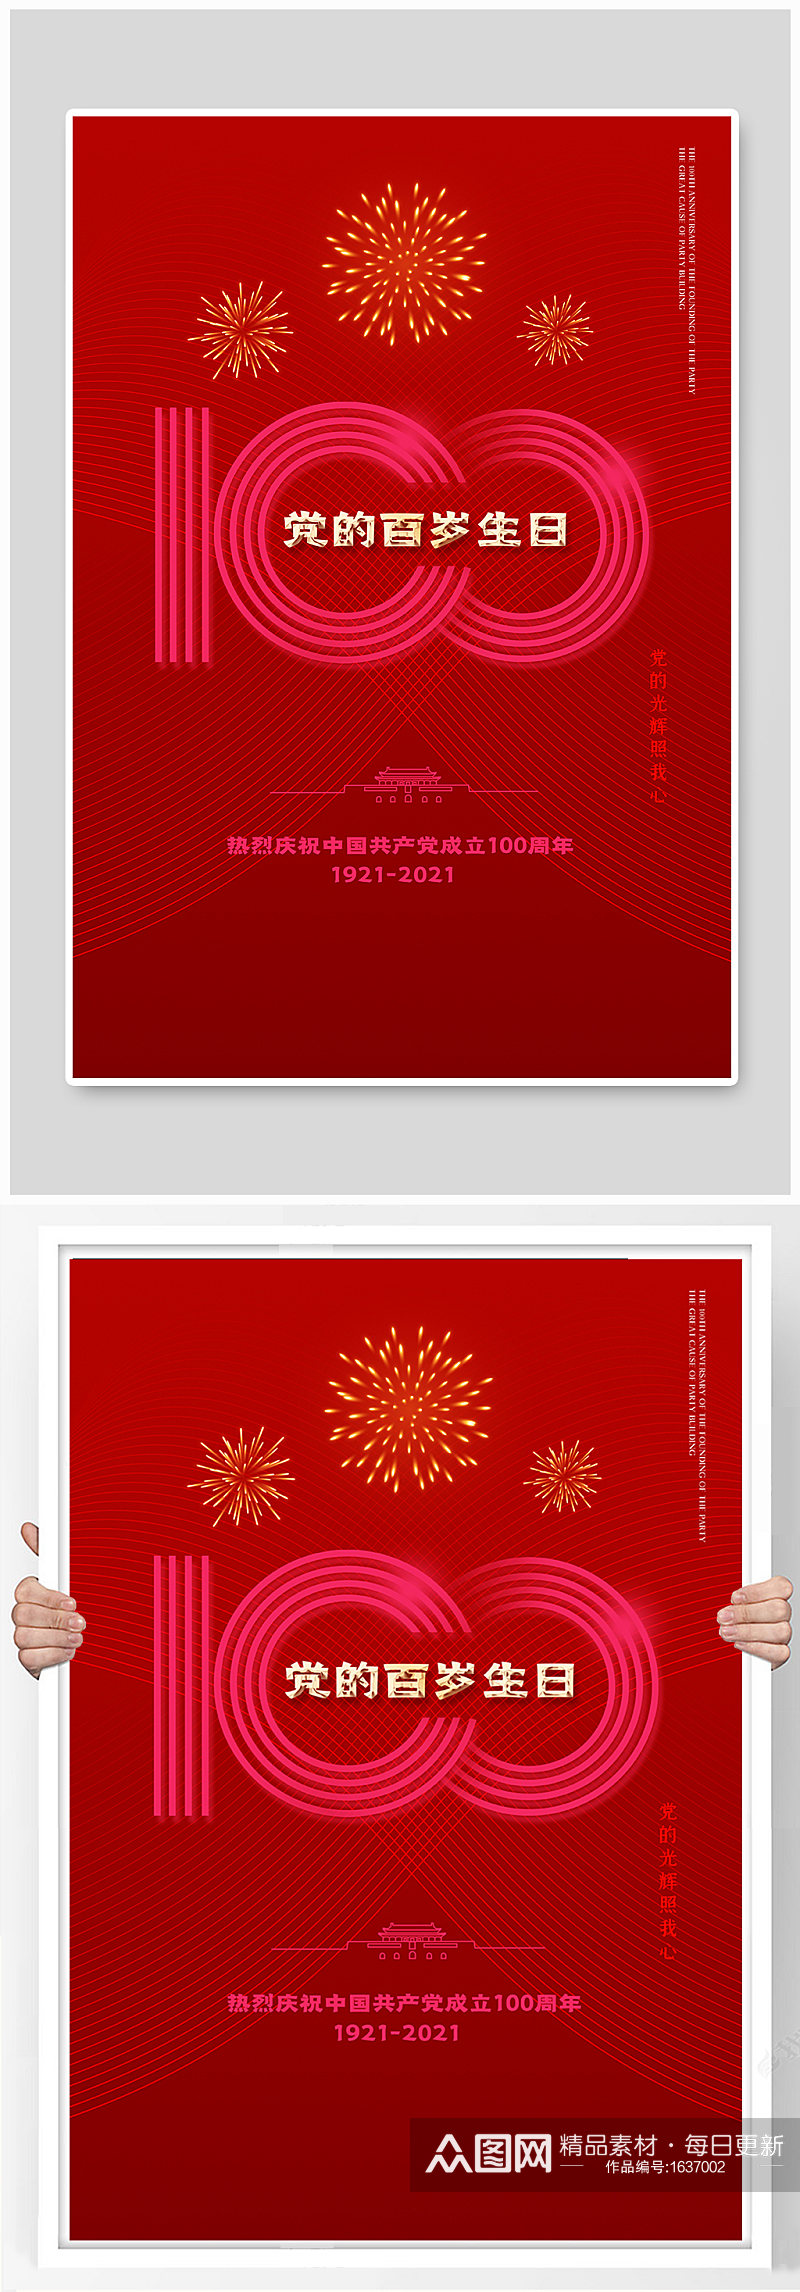 简约红色庆祝建党100周年海报素材